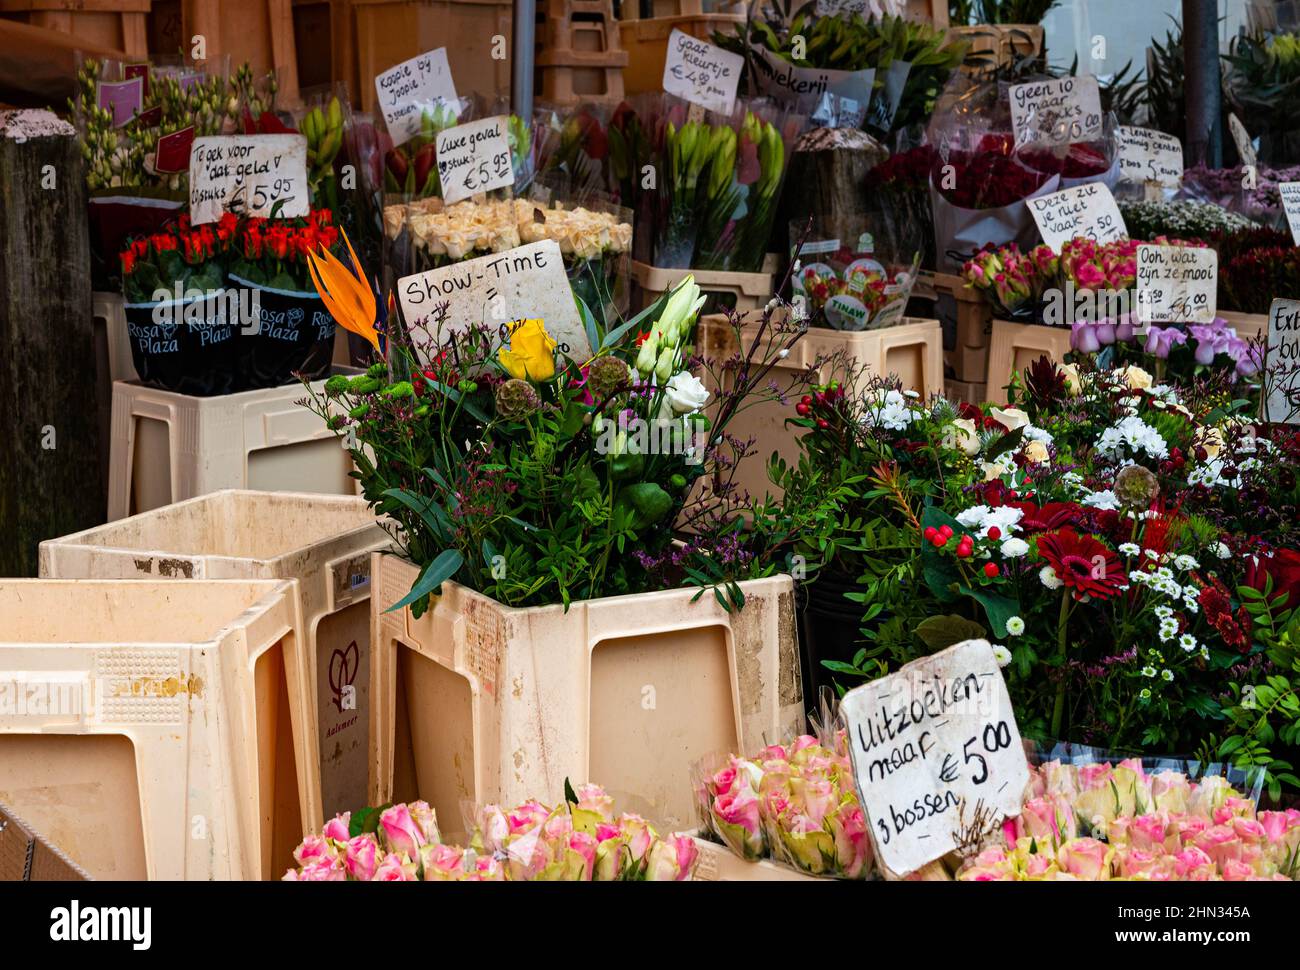 Blumenstand auf einem Straßenmarkt in Haarlem Schalkwijk in den Niederlanden Stockfoto